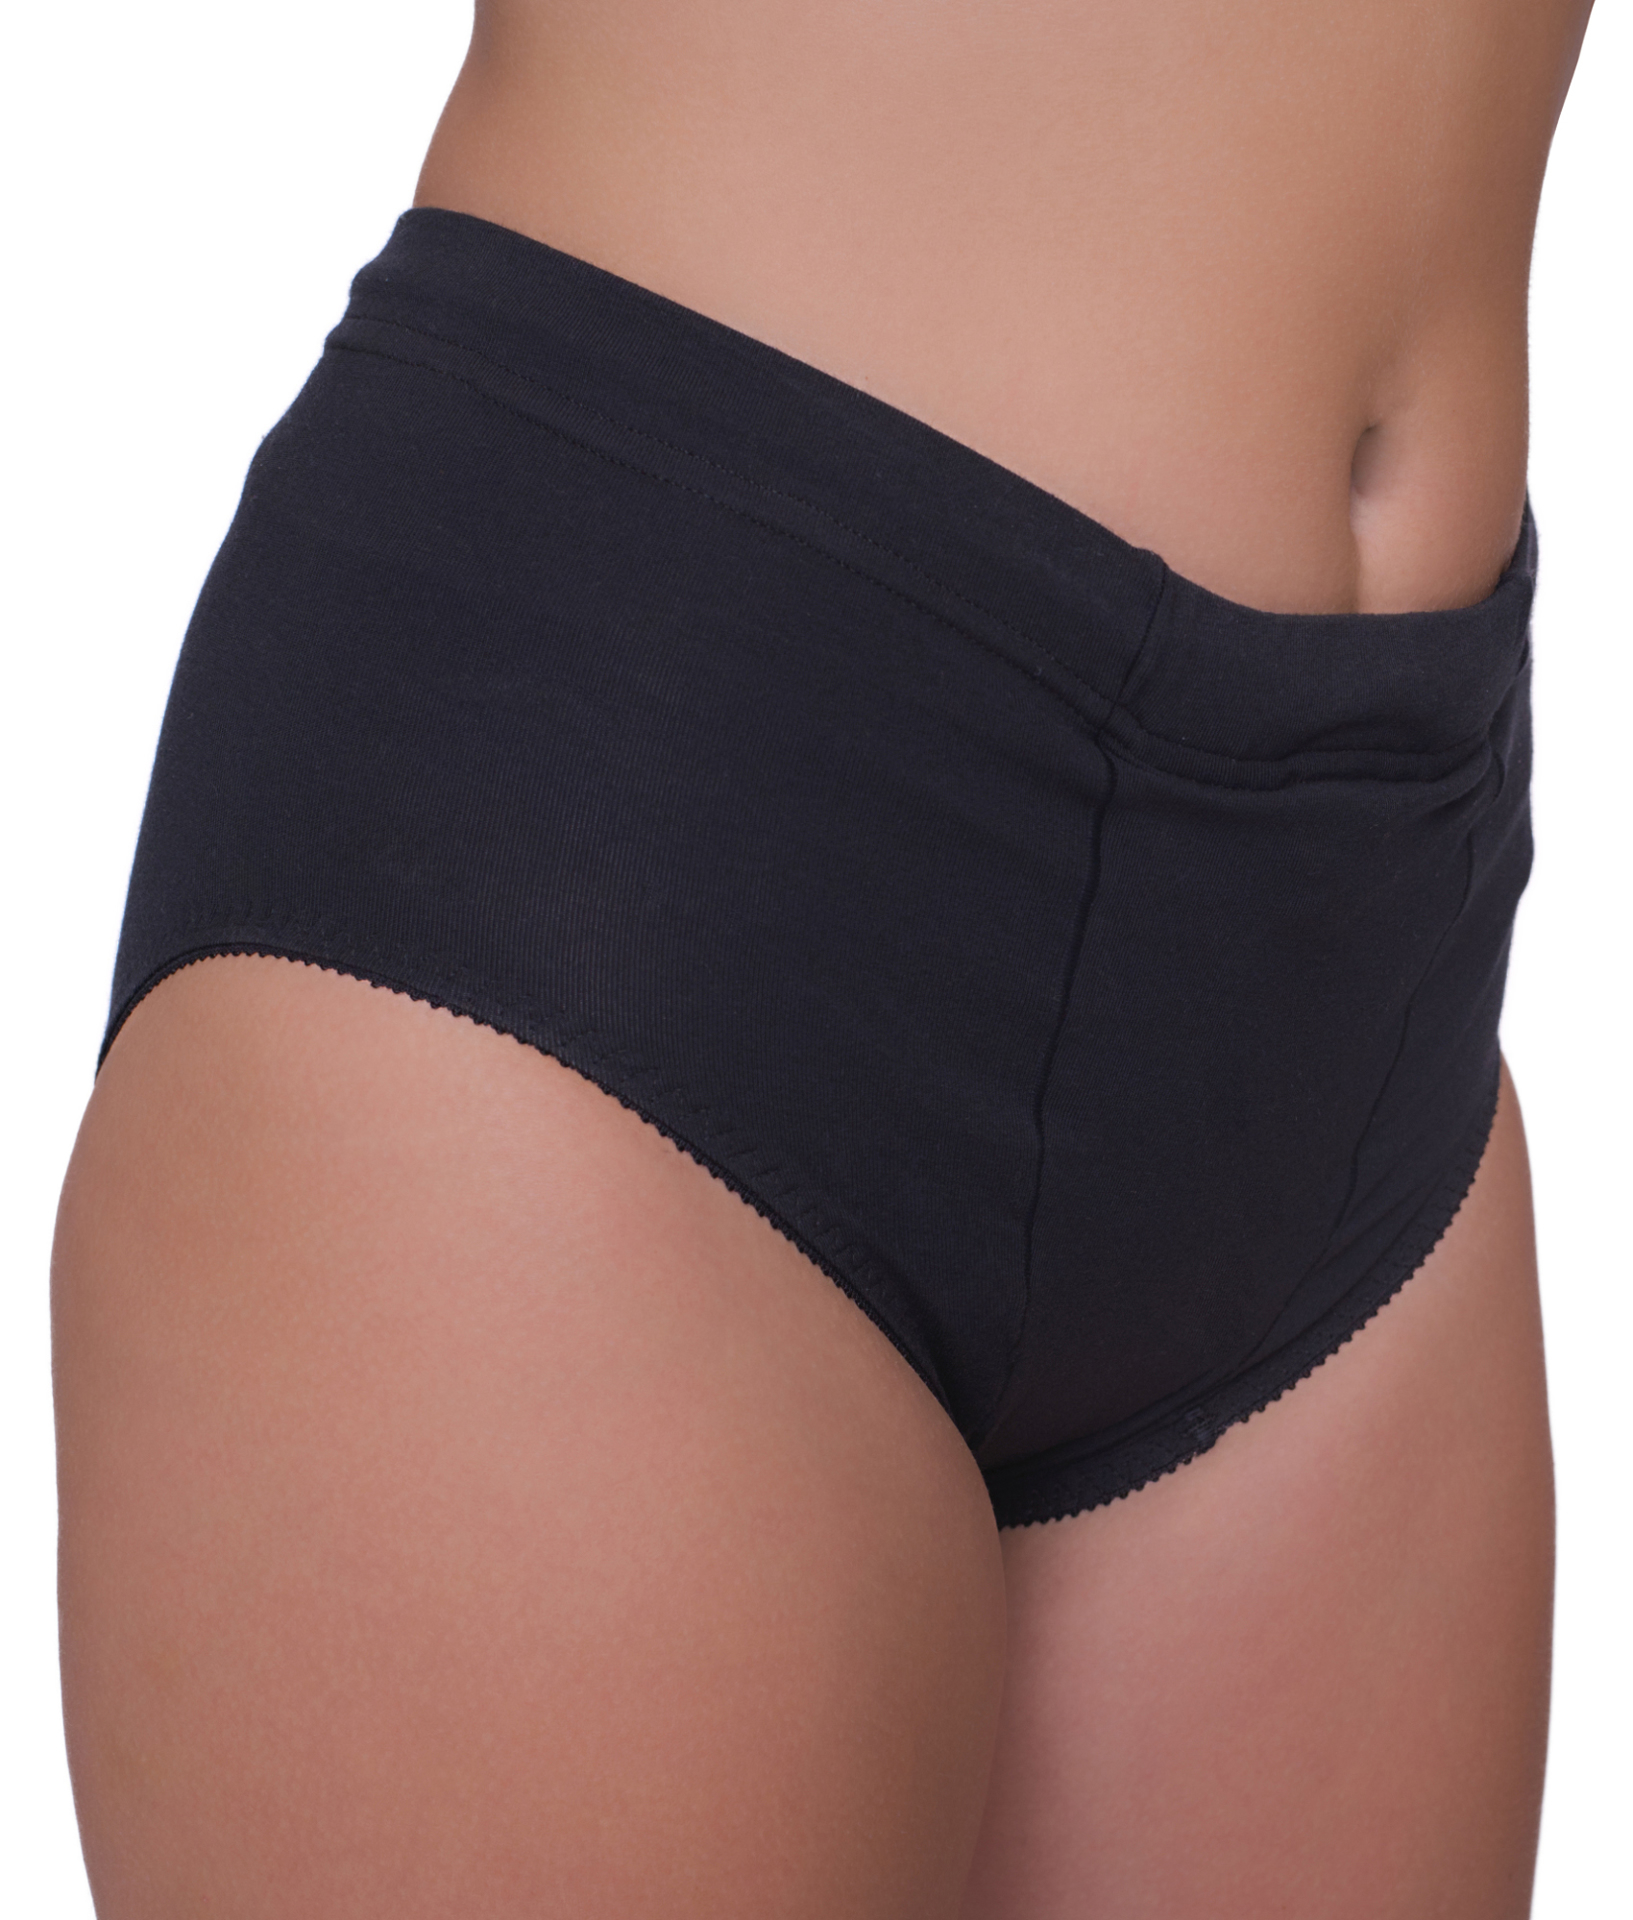 Underworks Manshape Hi-Rise Cotton Spandex Support & Shaping Underwear -  Black - M